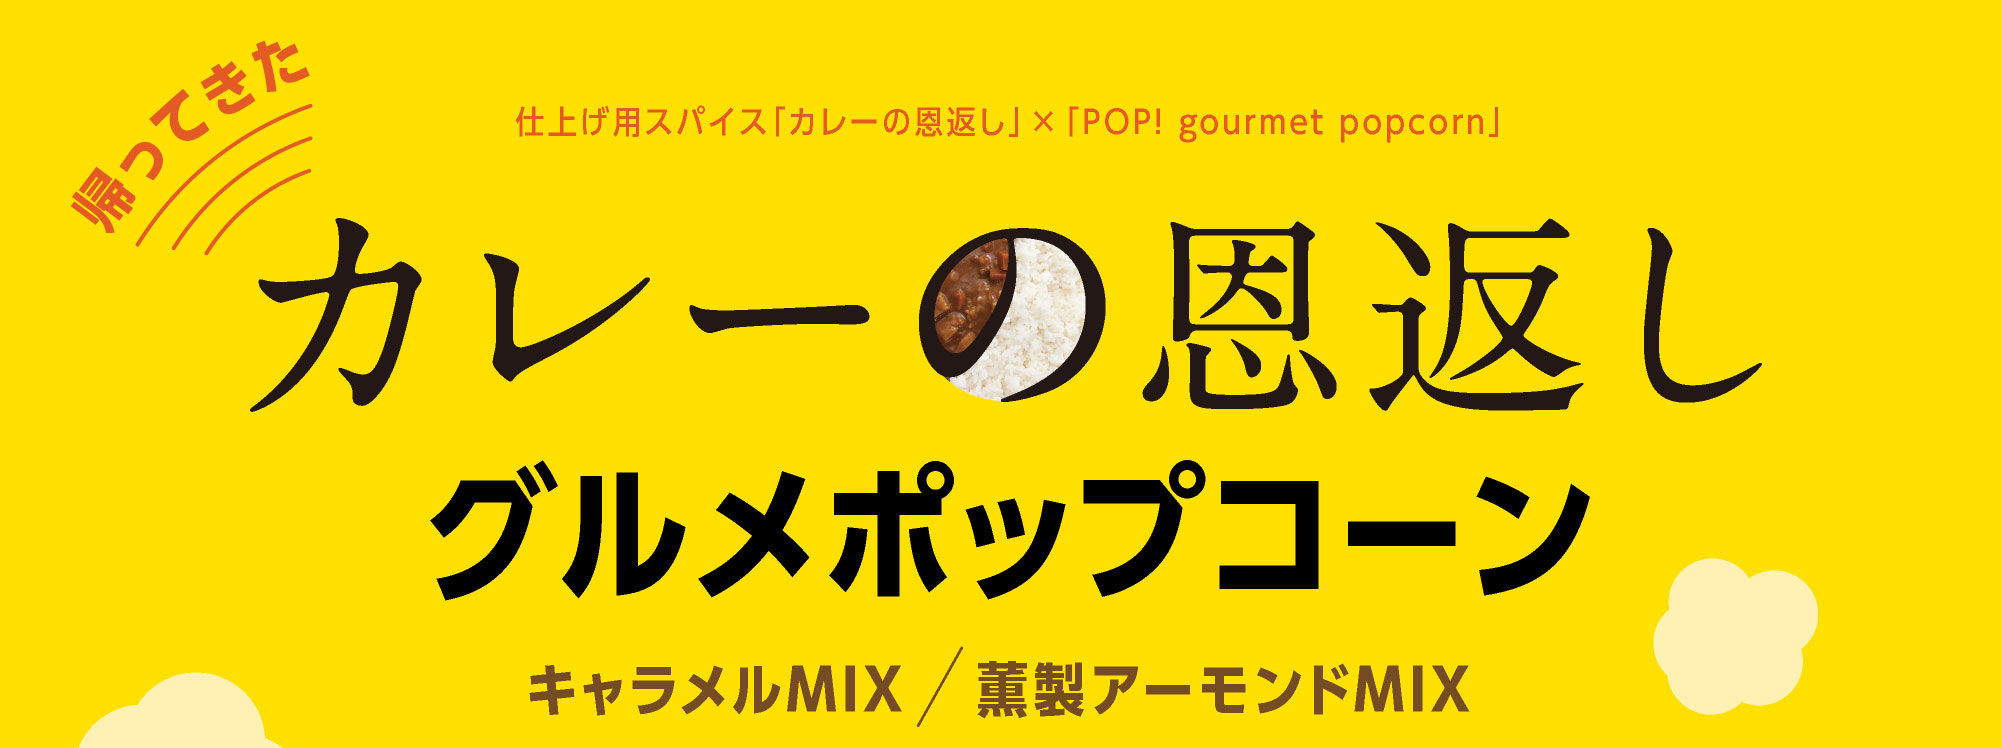 仕上げ用スパイス「カレーの恩返し」×「POP! gourmet popcorn」 カレーの恩返しグルメポップコーンキャラメルMIX / 薫製アーモンドMIX